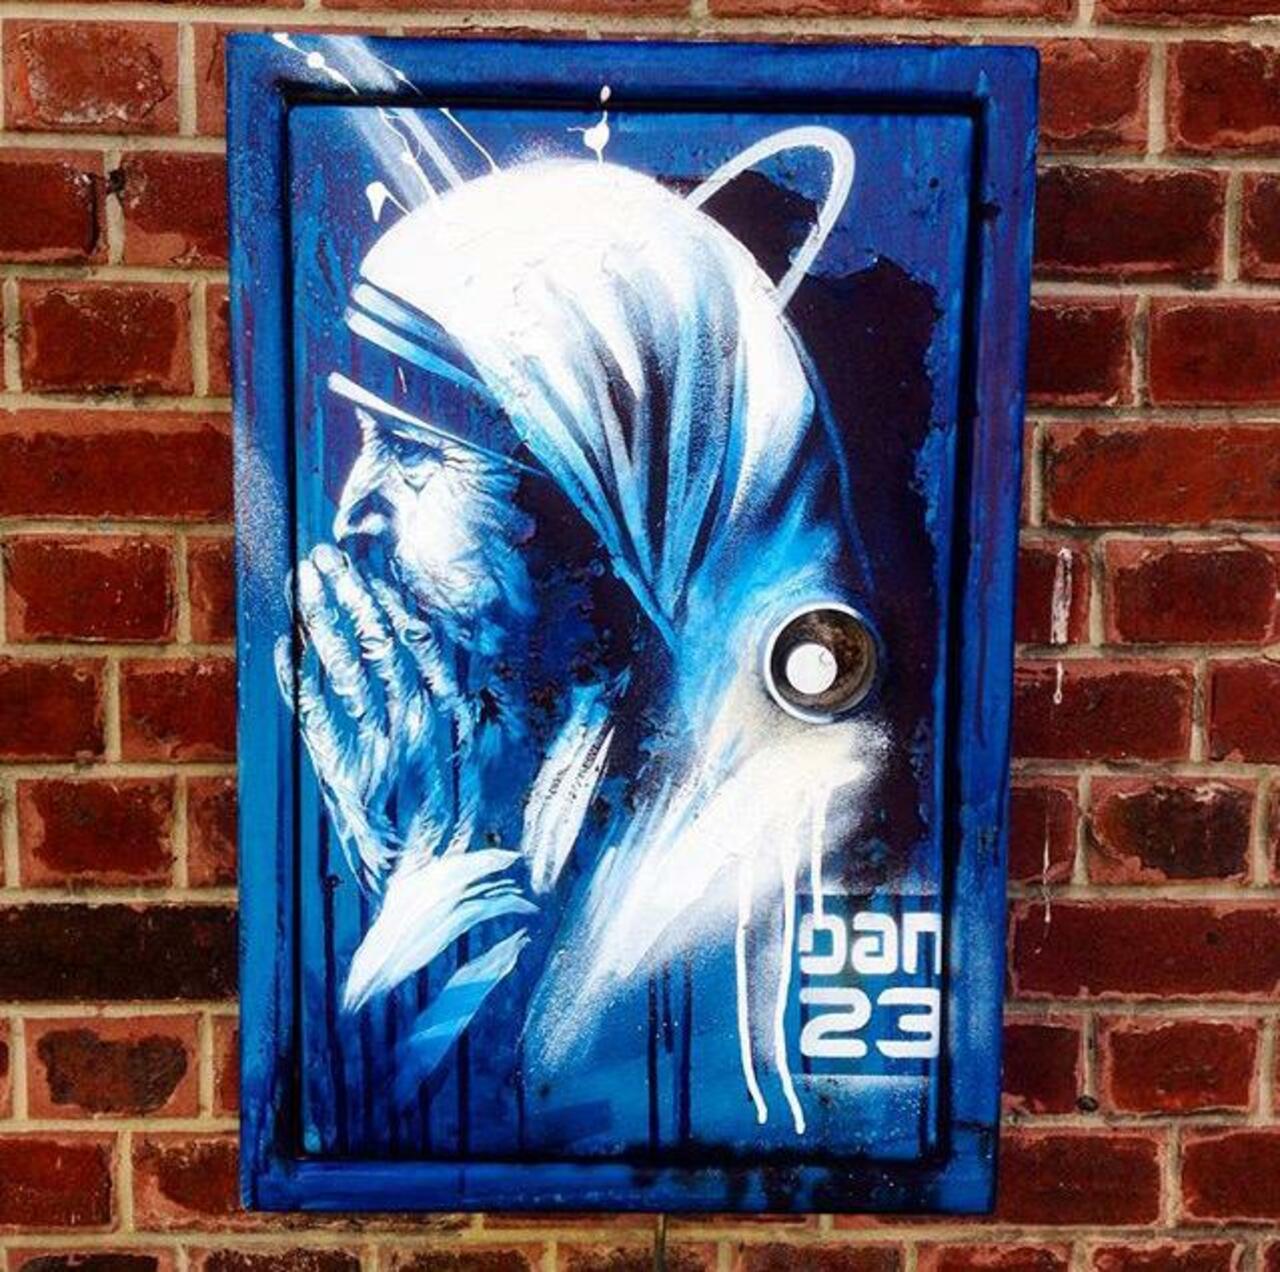 RT @buzz_sandyltn: New Street Art 'Détail Spirit' by Dan23 

#art #graffiti #mural #streetart http://t.co/Np3KwHqG84